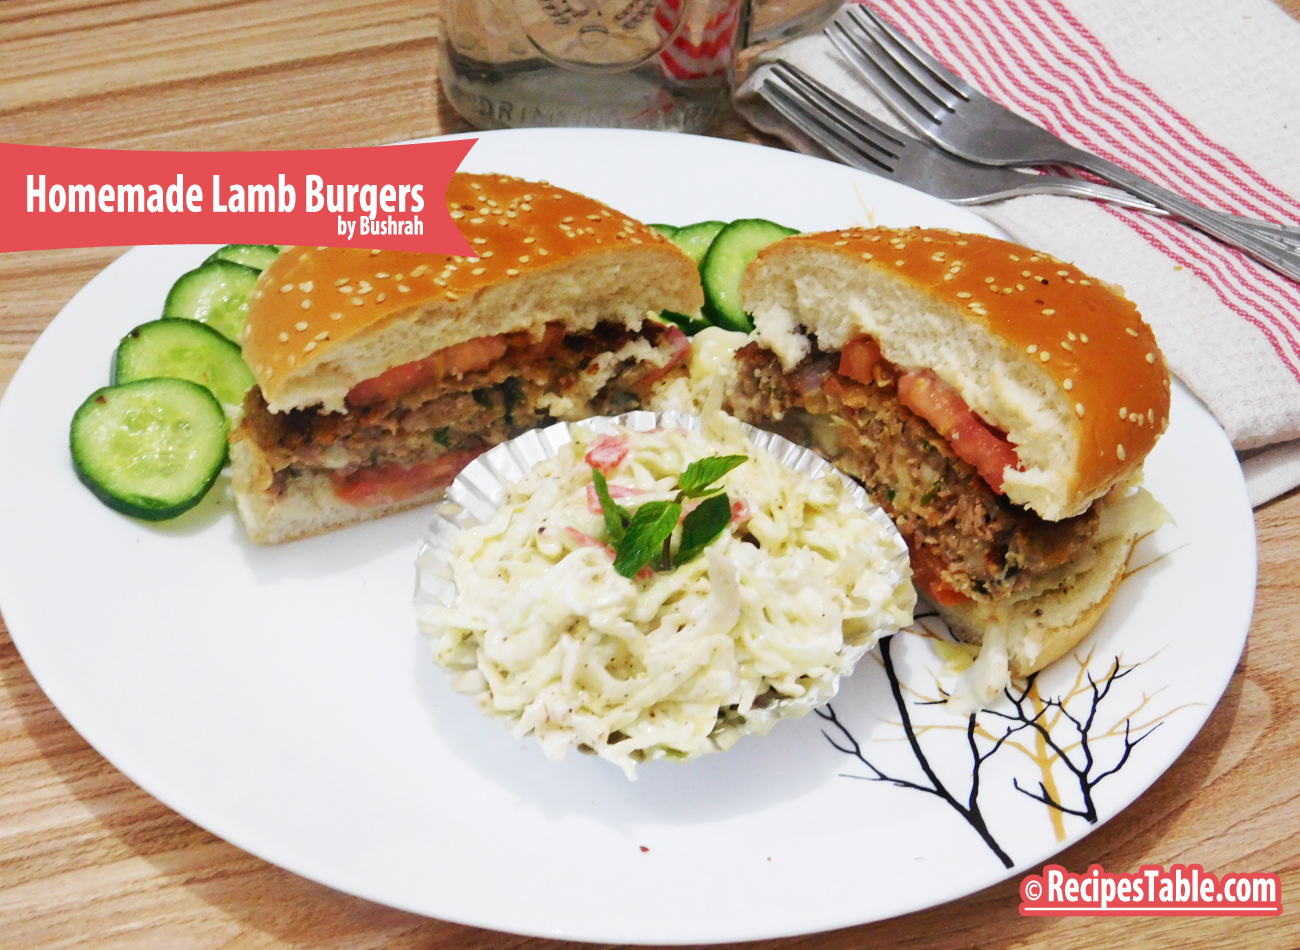 Homemade Lamb Burgers recipe